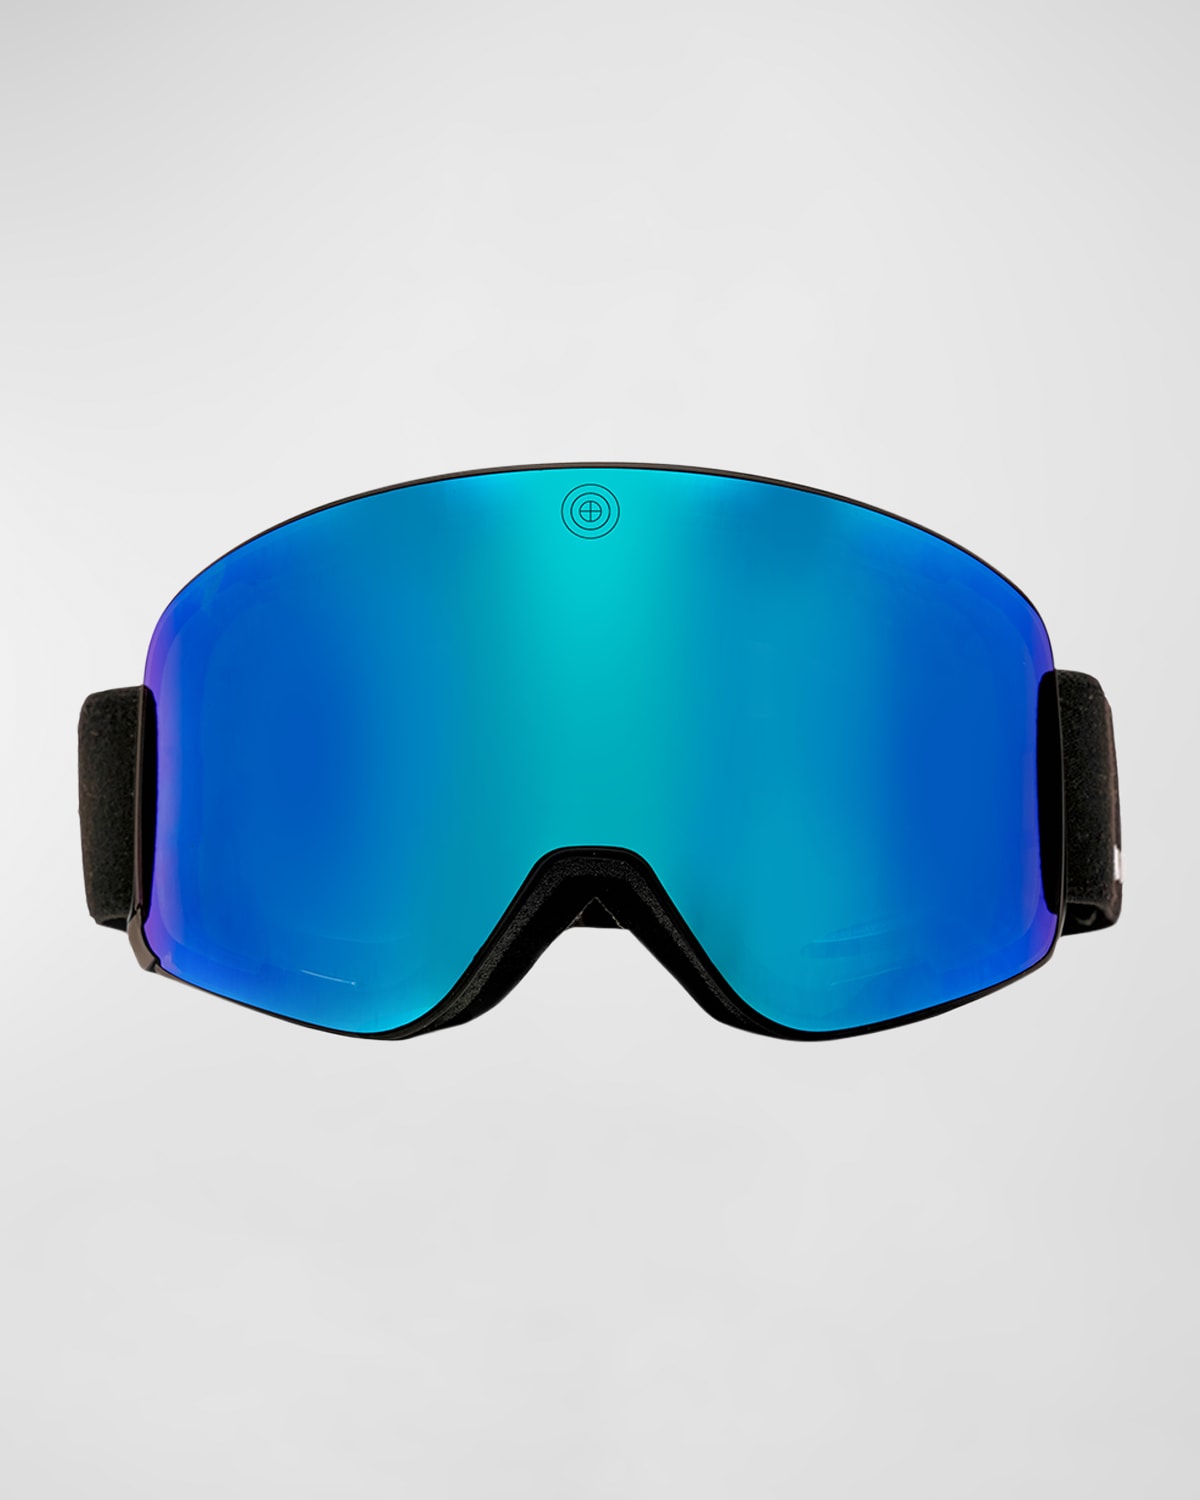 Bomber Ski Aim Beyond Ski Goggles In Black